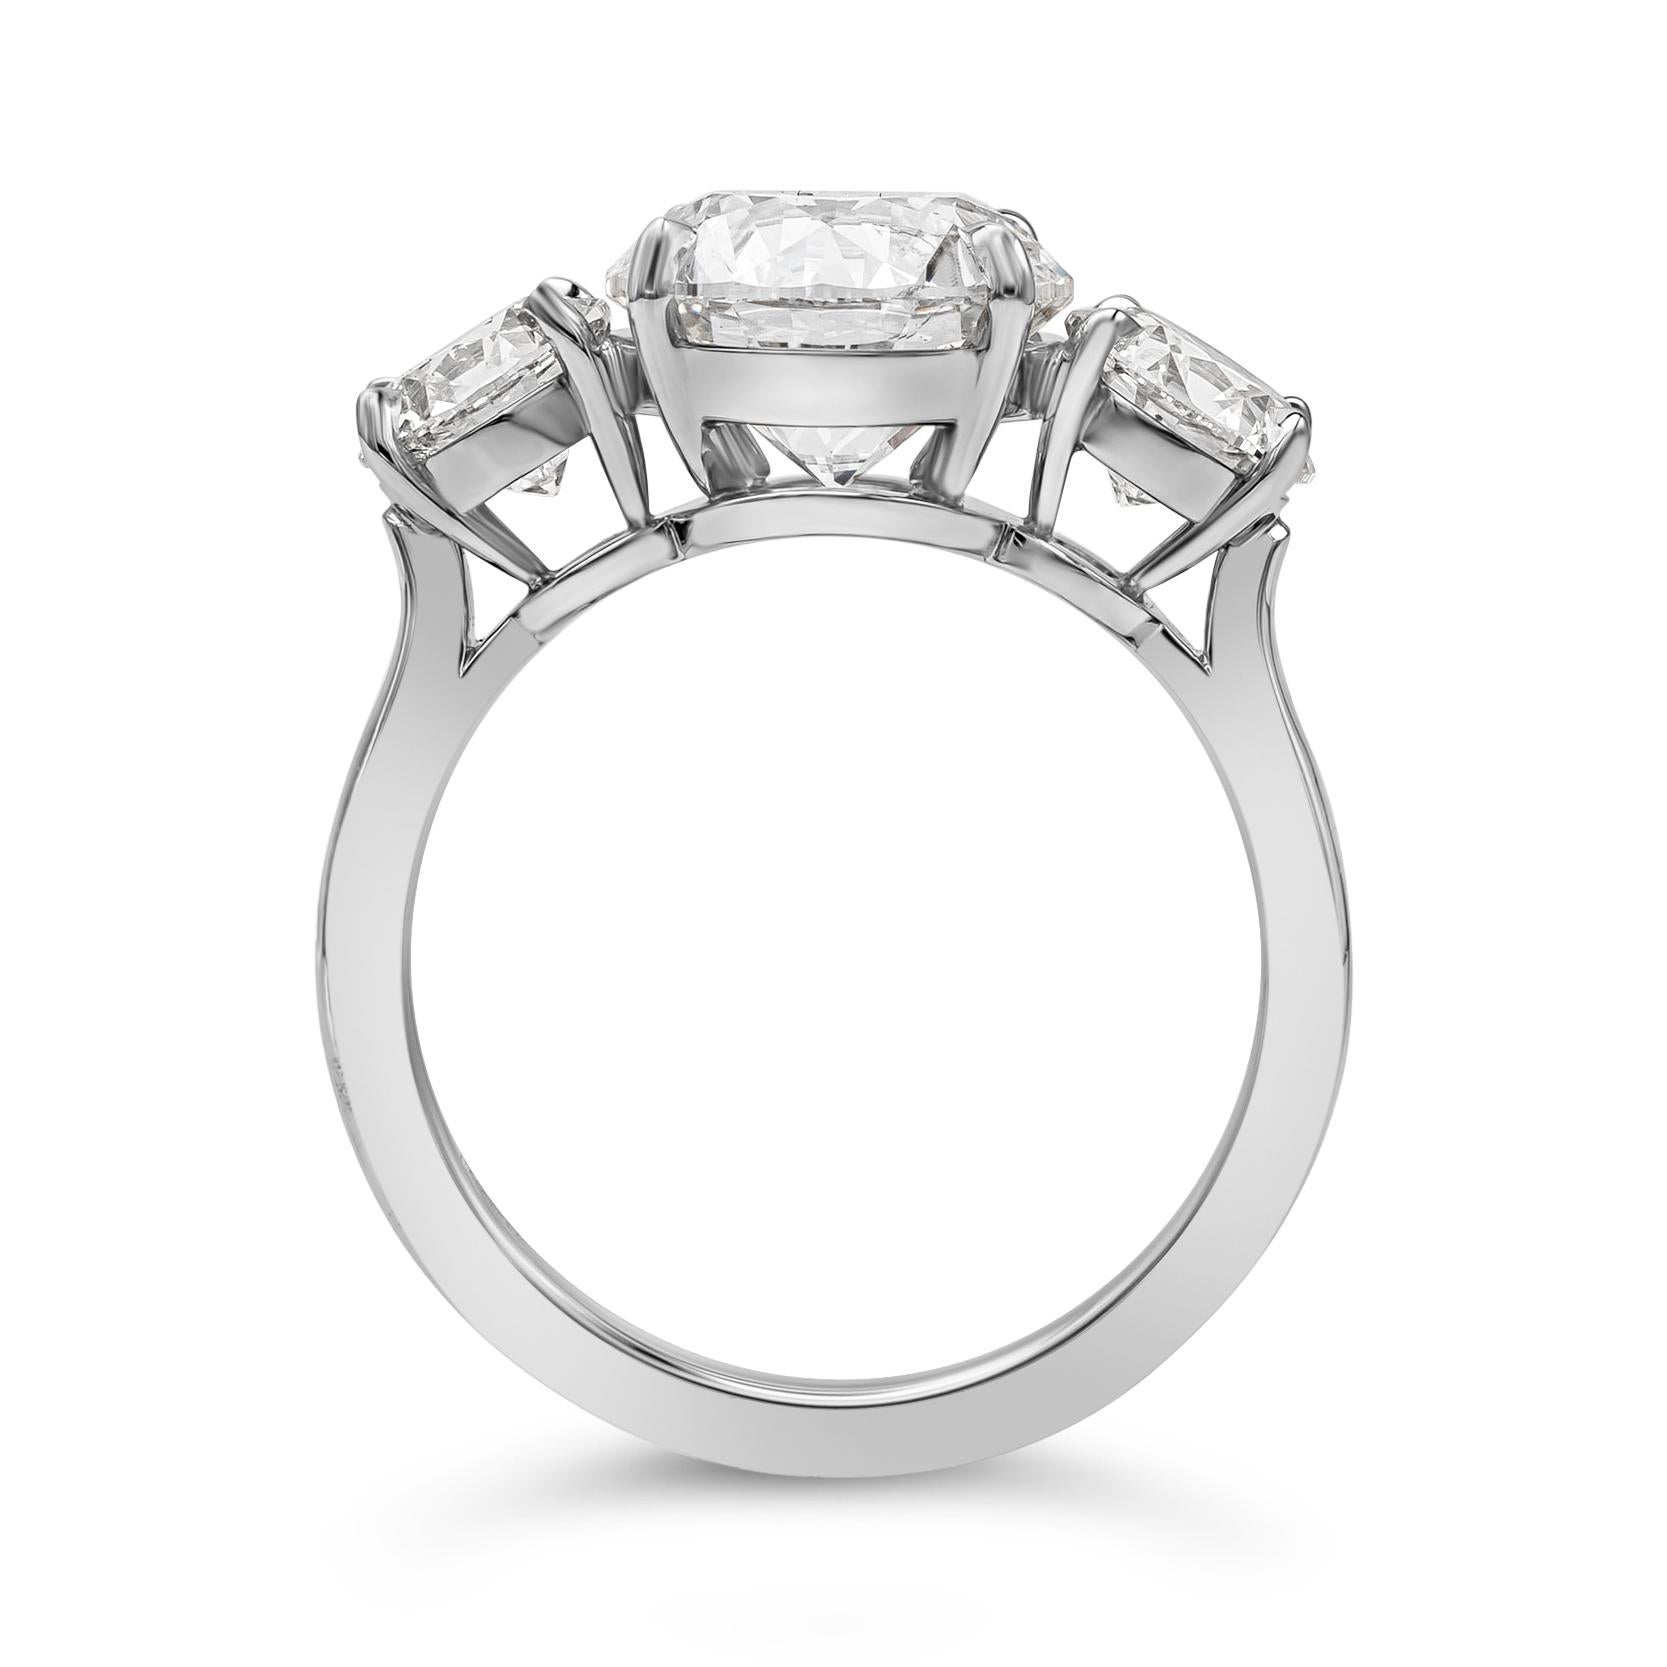 3.02 carat diamond ring price